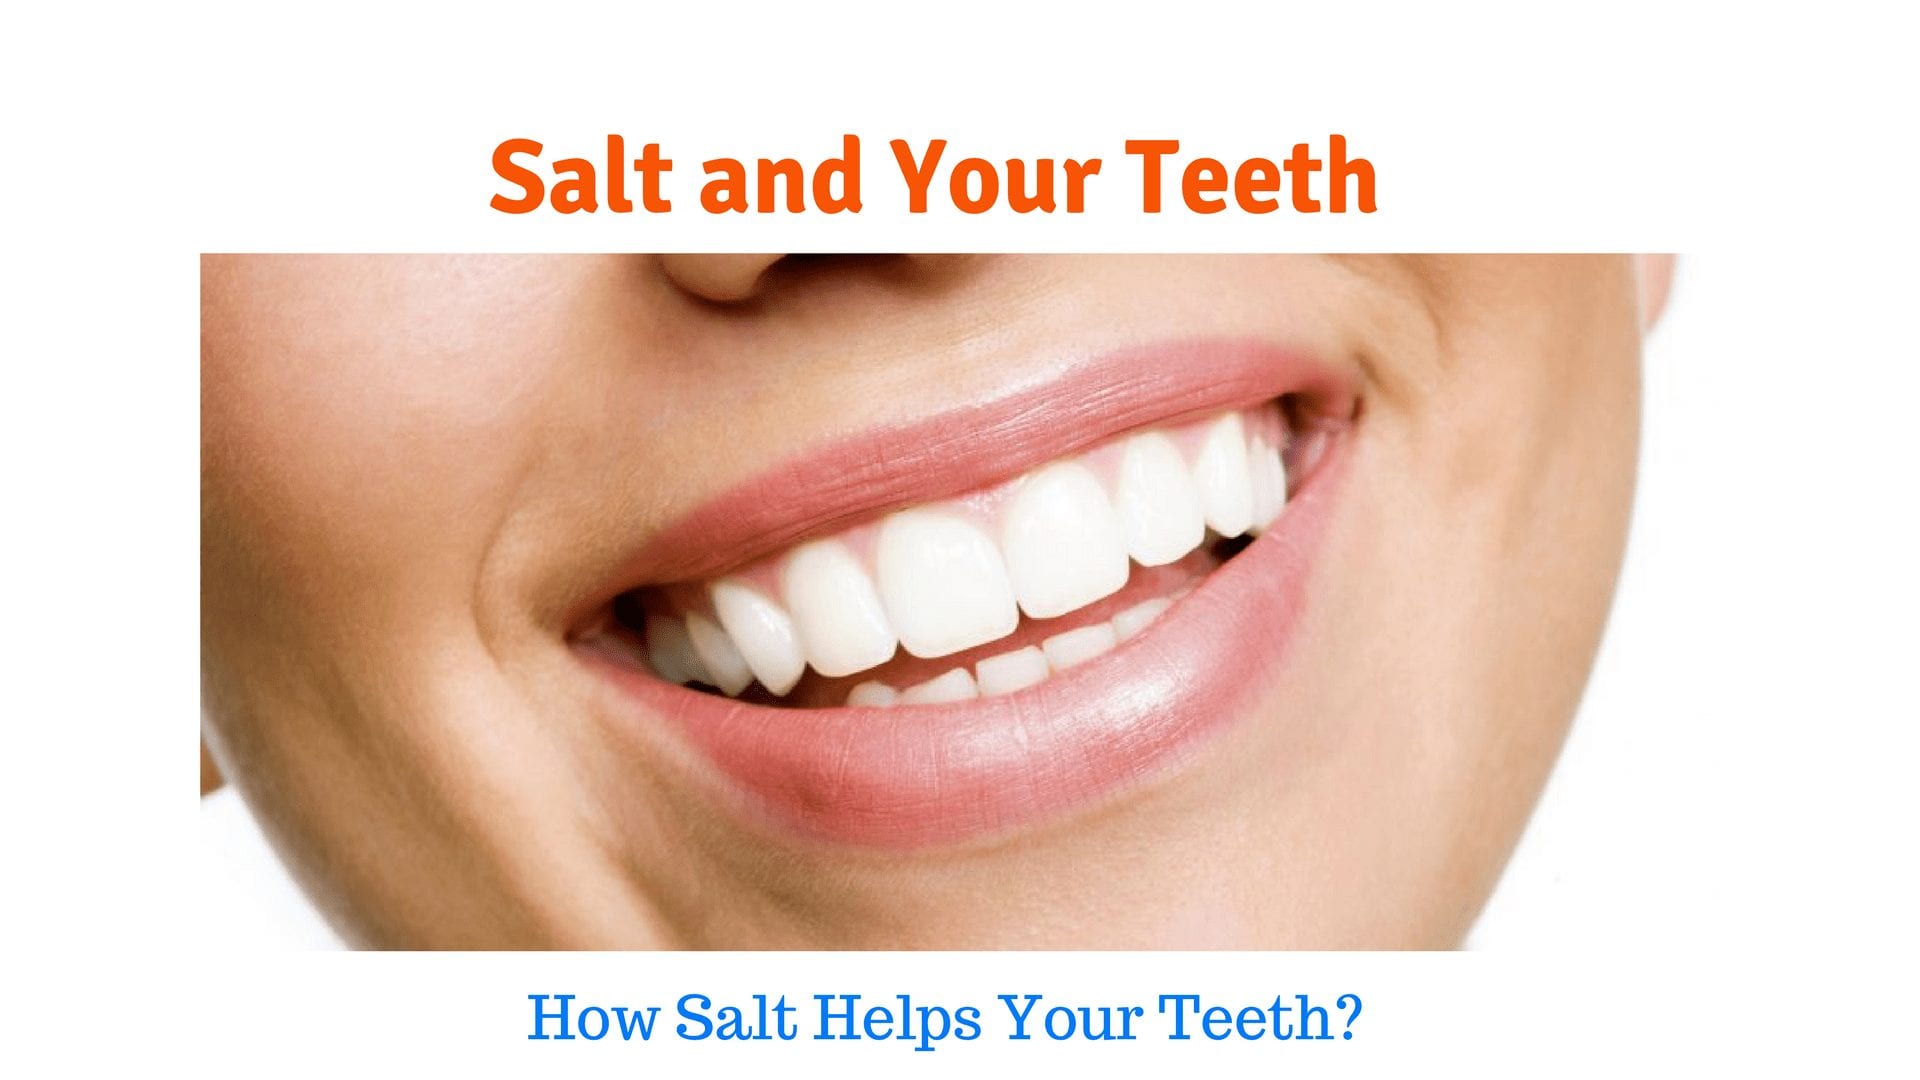 Salt and Your Teeth